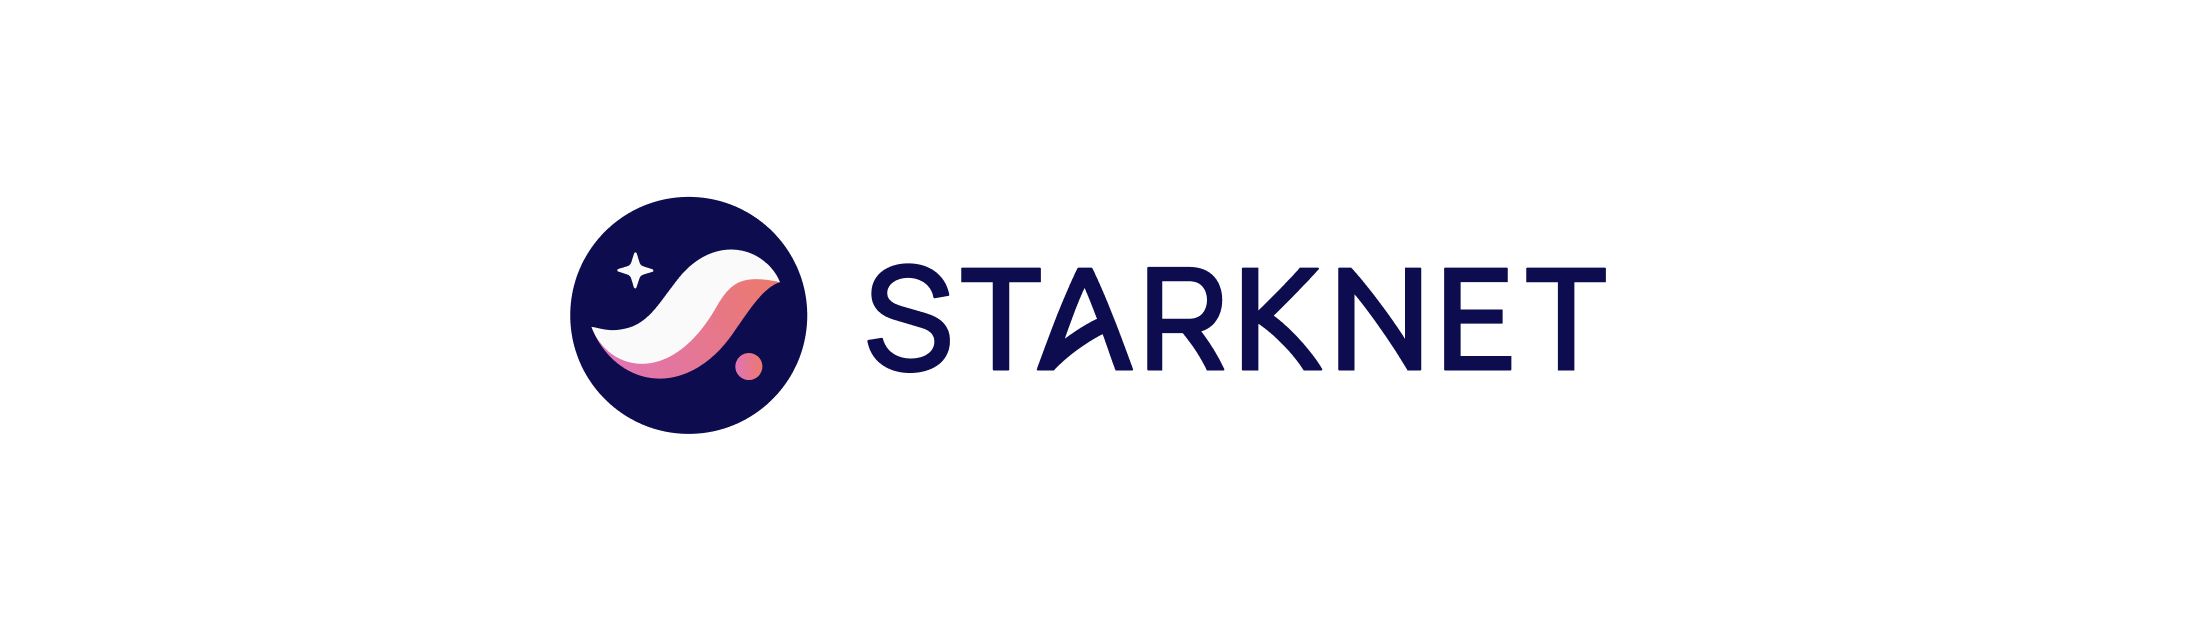 Media kit - Starknet - Starknet